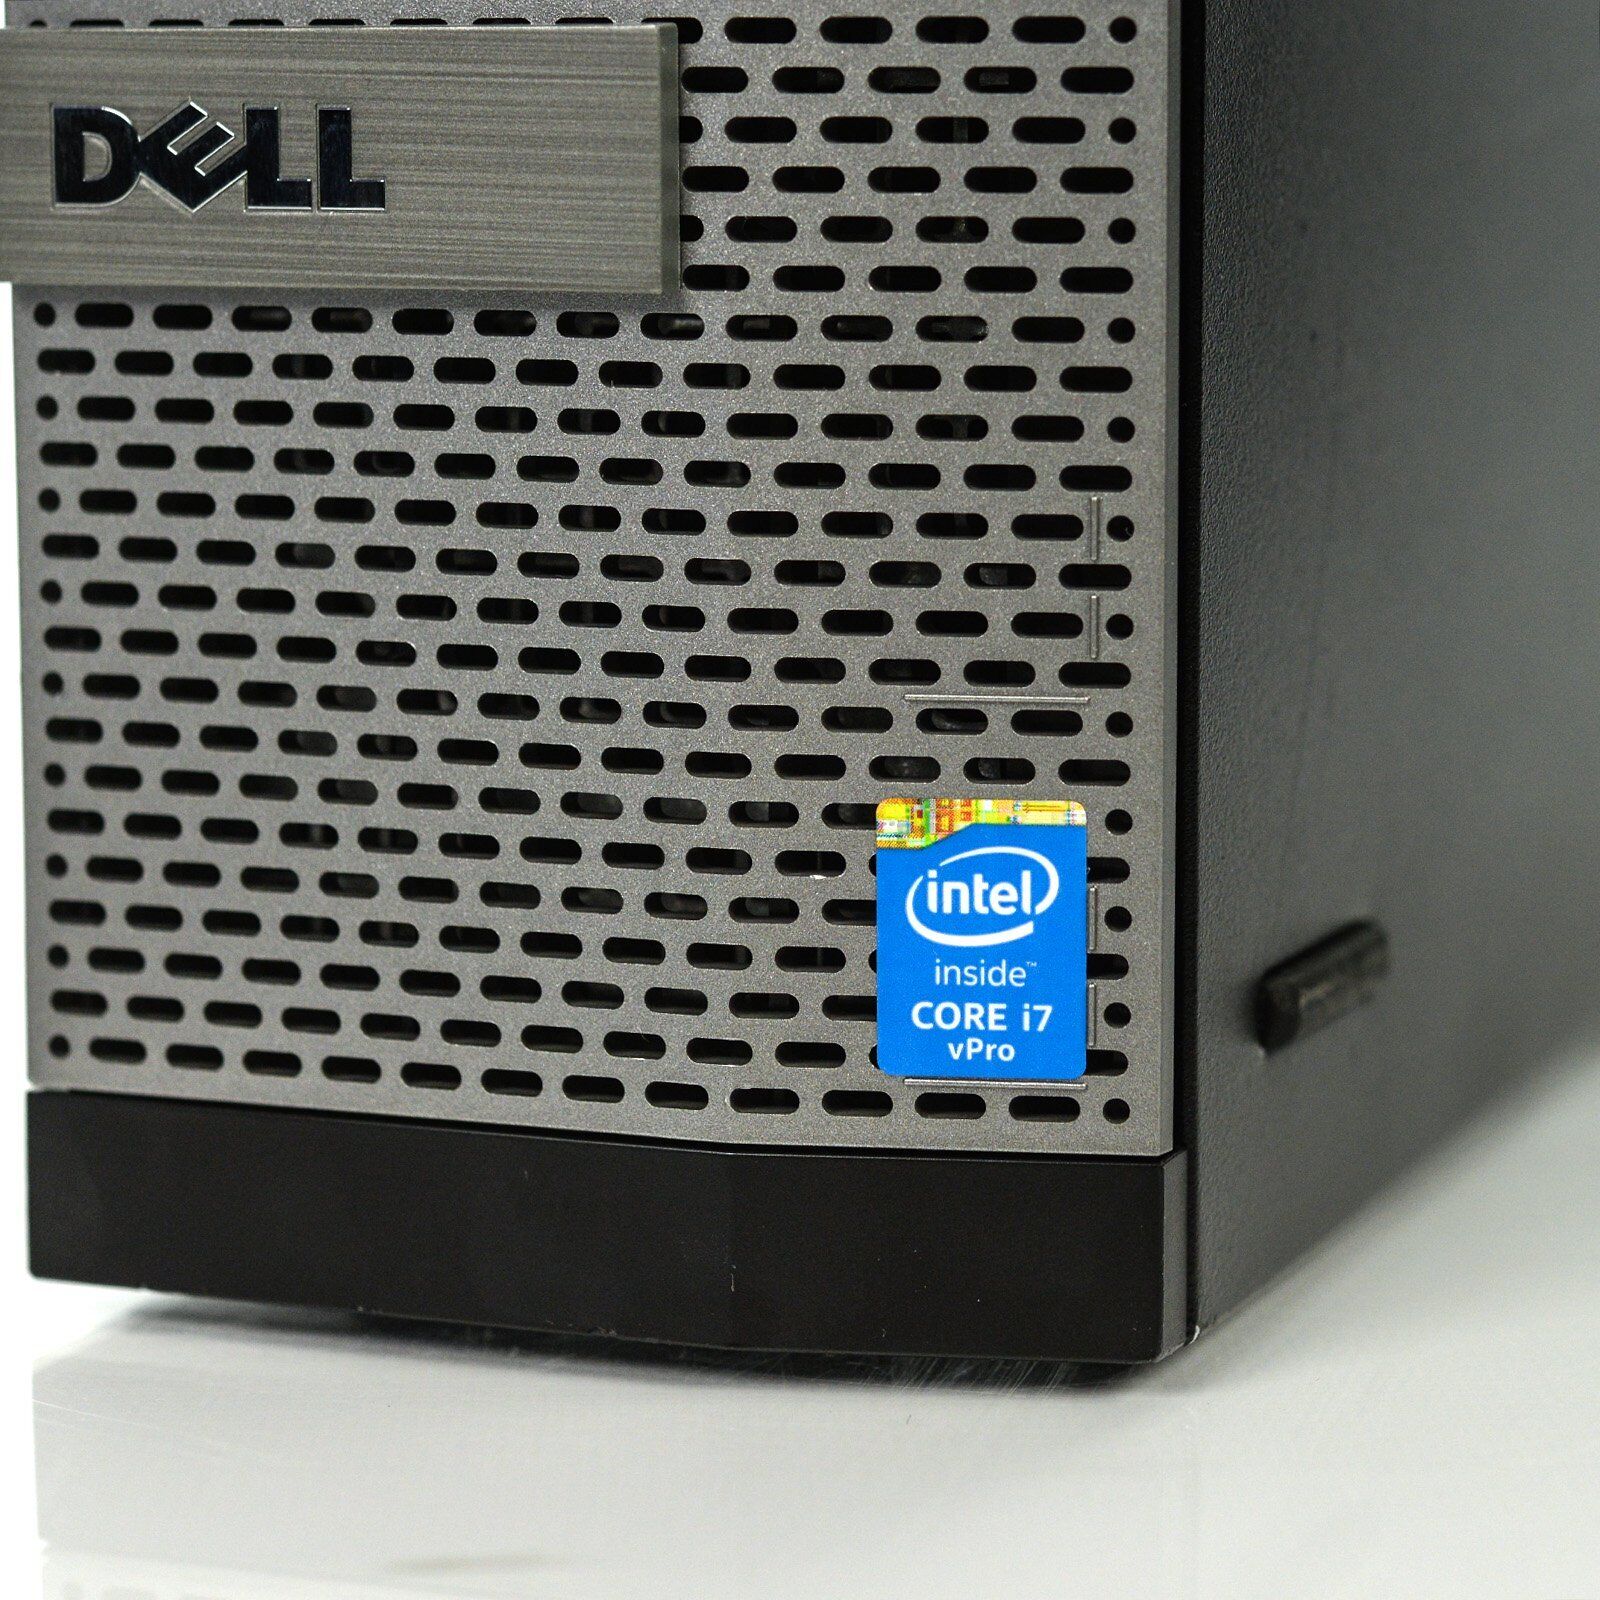 Dell Optiplex 9020 Small Form Factor| Intel core i7 |16GB RAM | 1TBSSD | Grade A